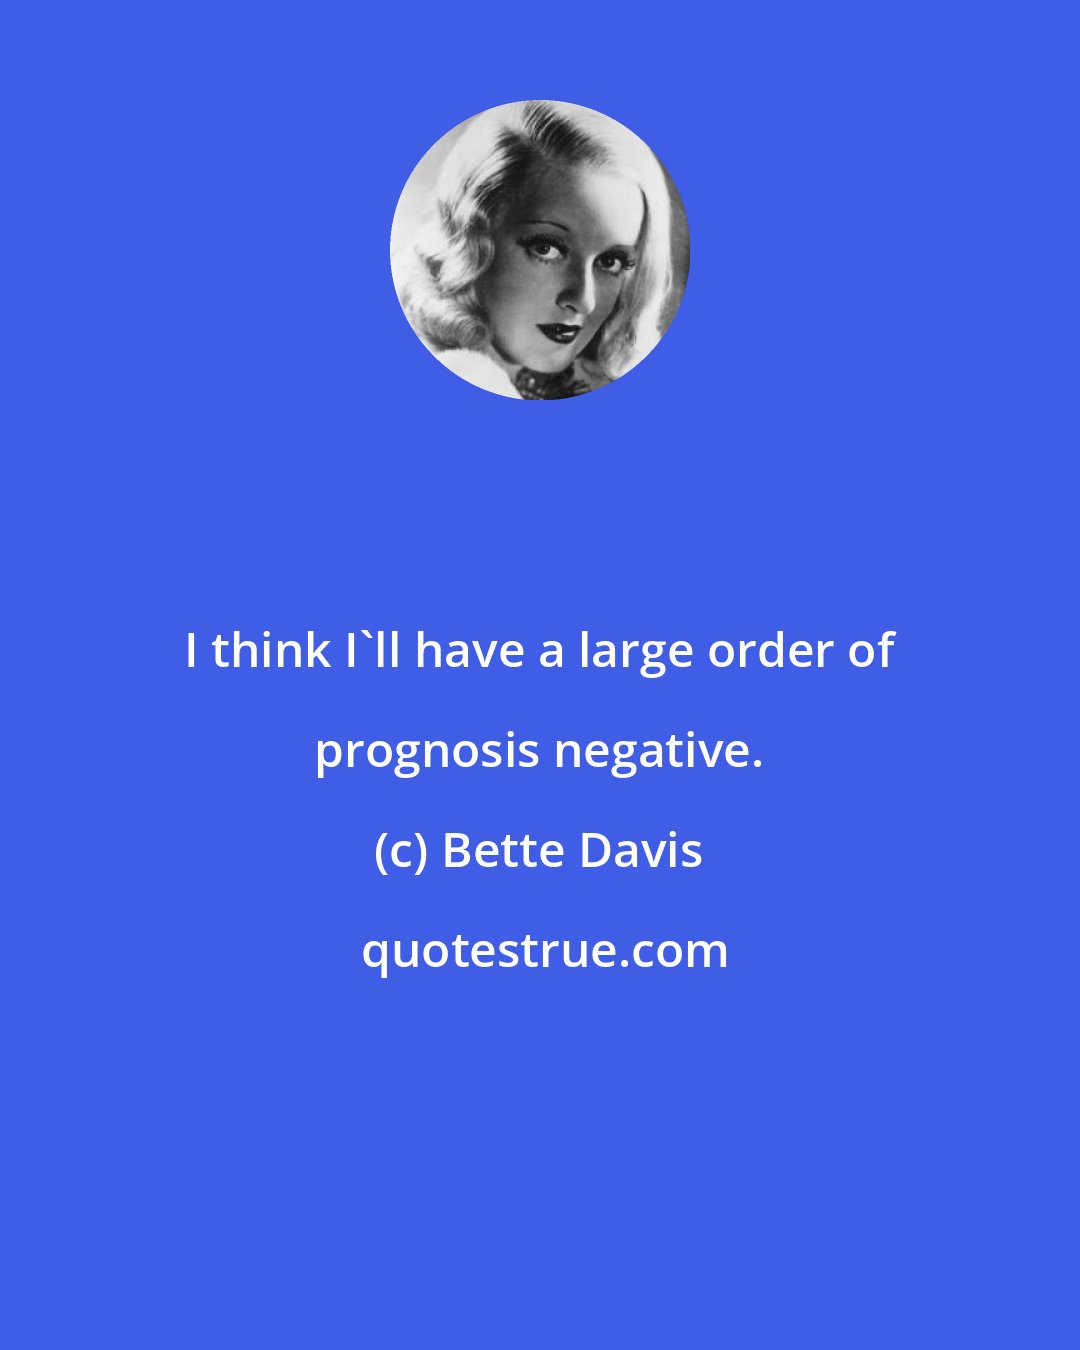 Bette Davis: I think I'll have a large order of prognosis negative.